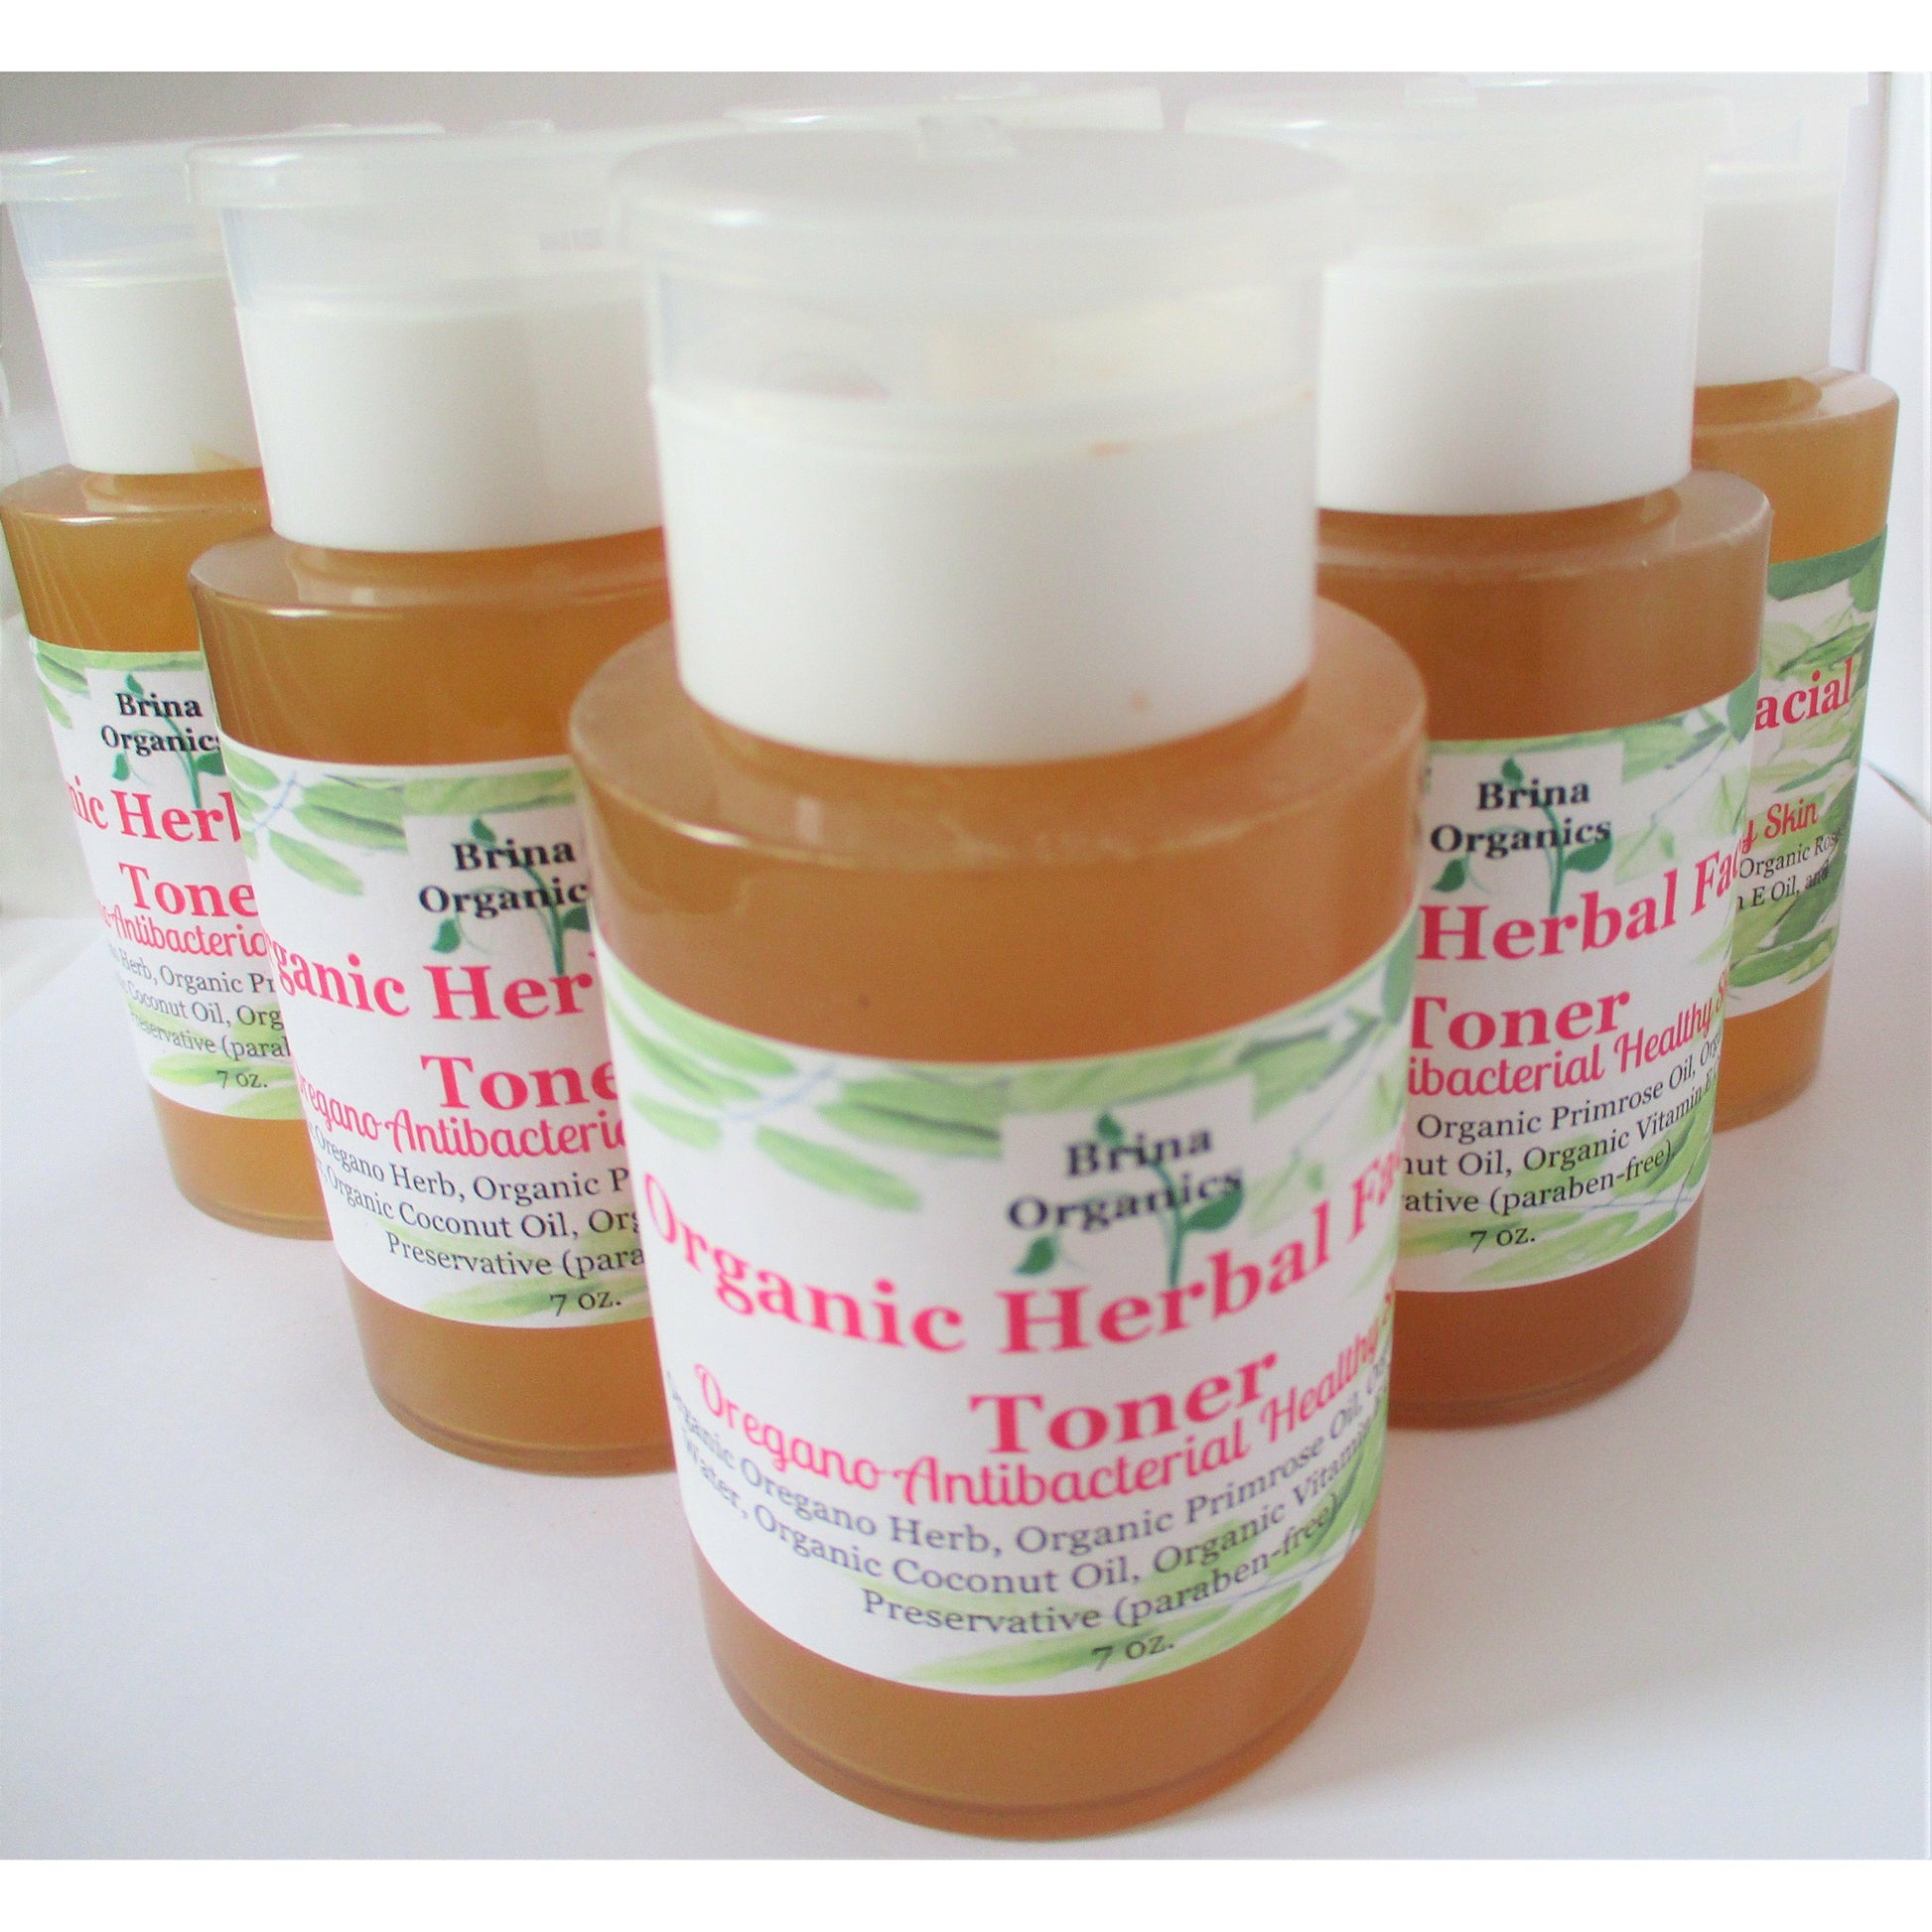 Organic Herbal Facial Toner 7 oz., Oregano Antibacterial Healthy Skin